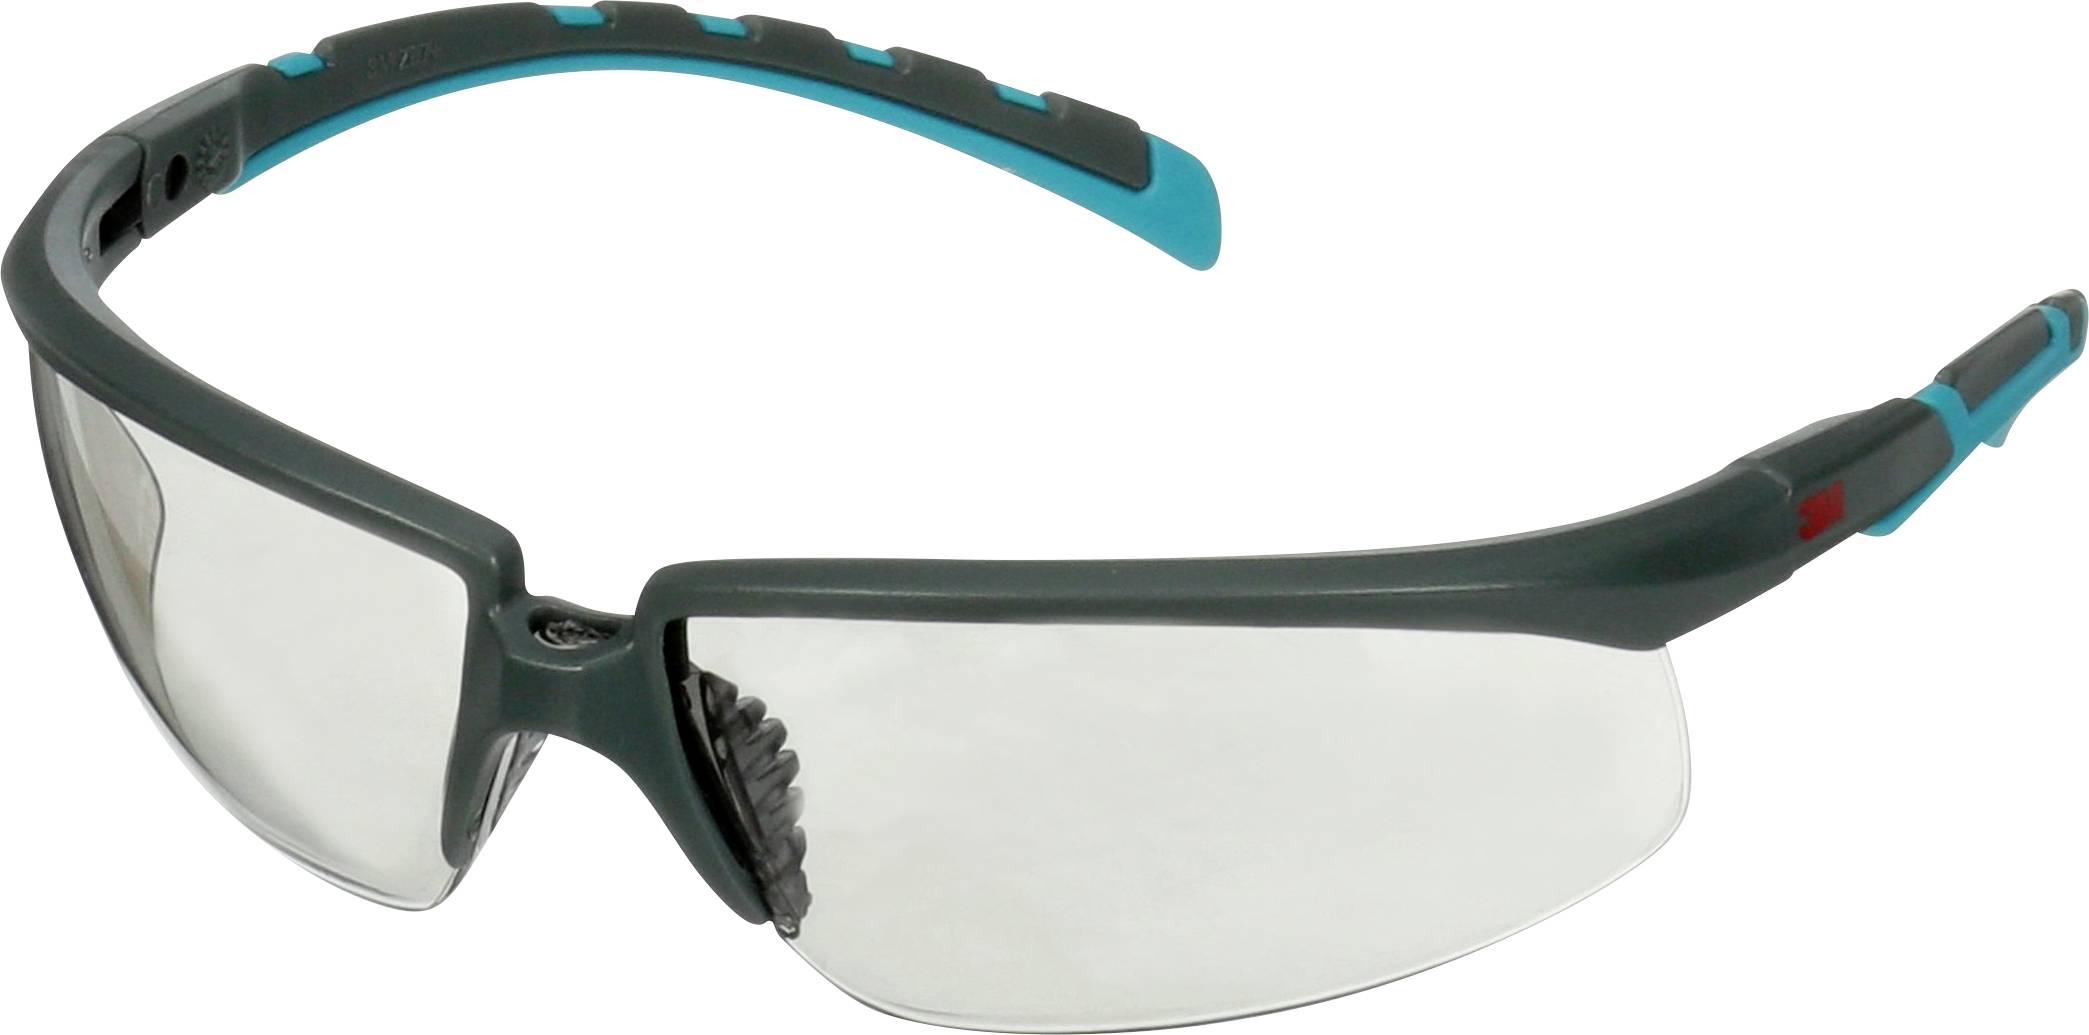 3M S2007SGAF-BGR Schutzbrille mit Antibeschlag-Schutz winkelverstellbar Türkis Grau (S2007SGAF-BGR)